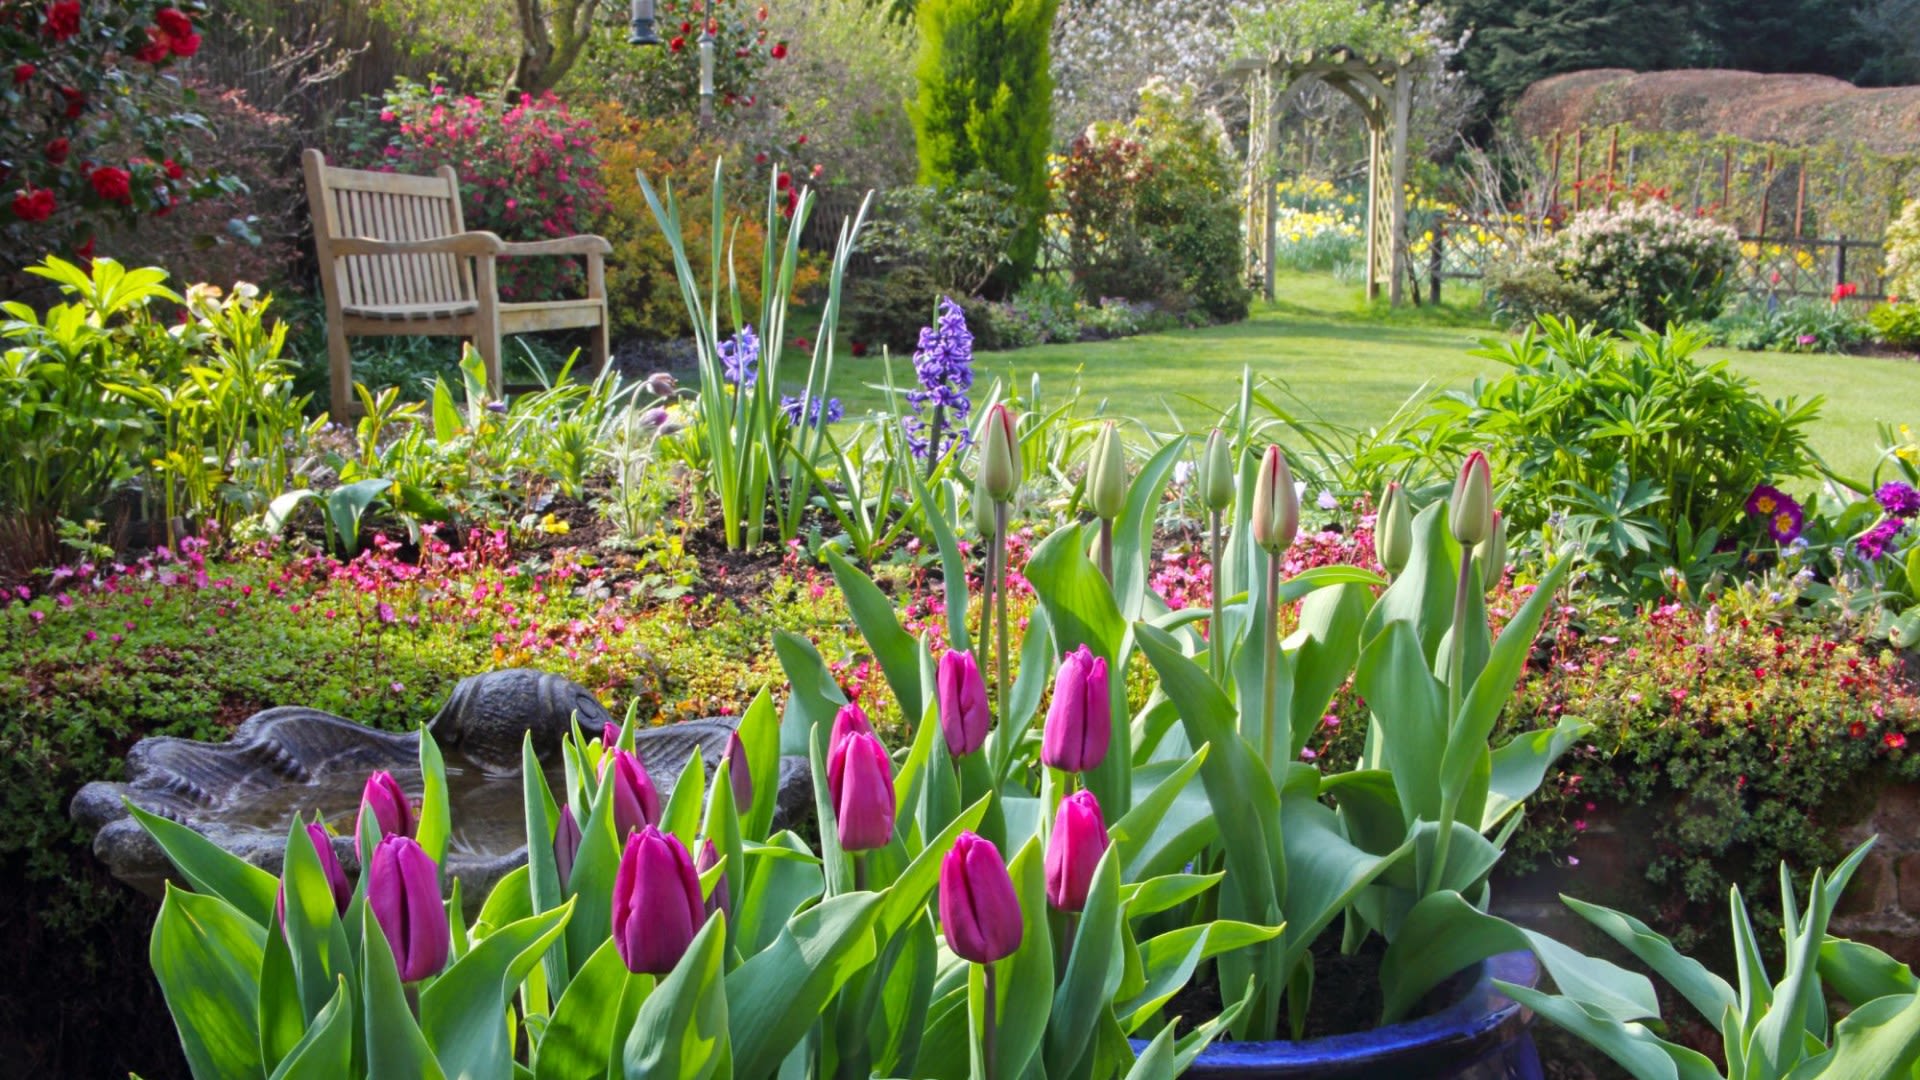 Gardening expert reveals tip to ensure bigger tulip blooms next spring